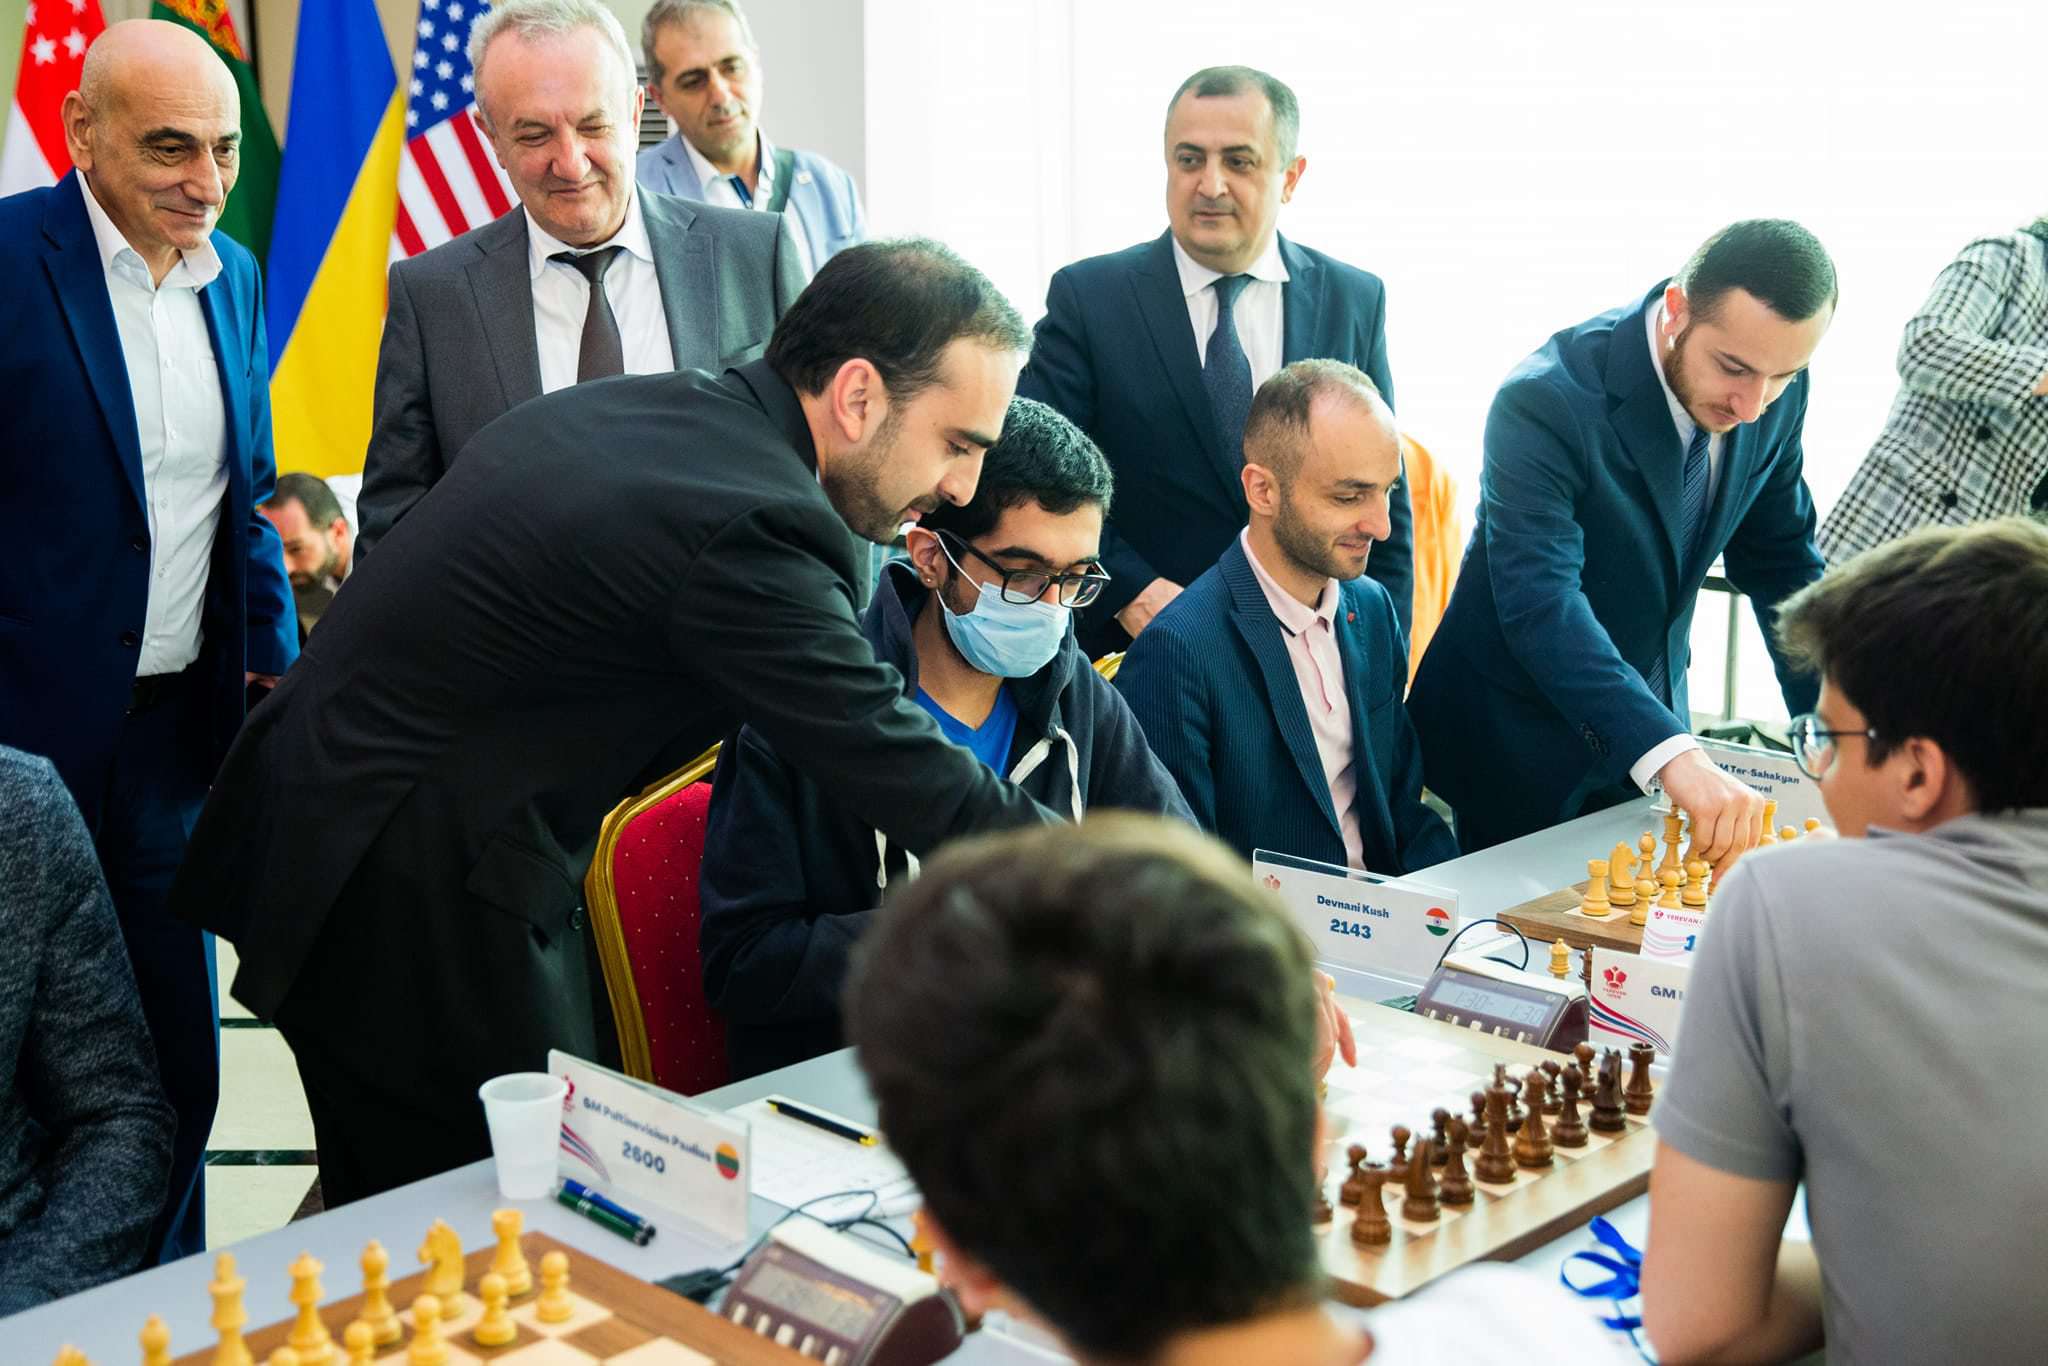 Rafael Vahanyan plays chess with children